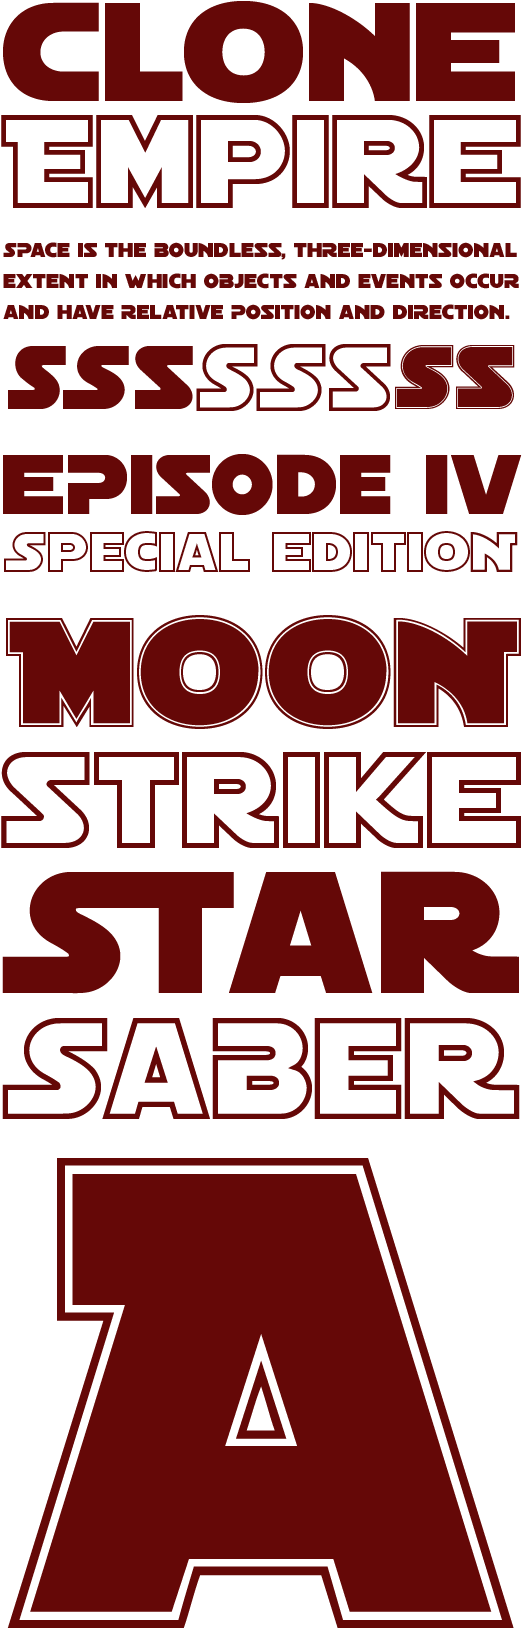 Star Wars Style Font Design PNG image